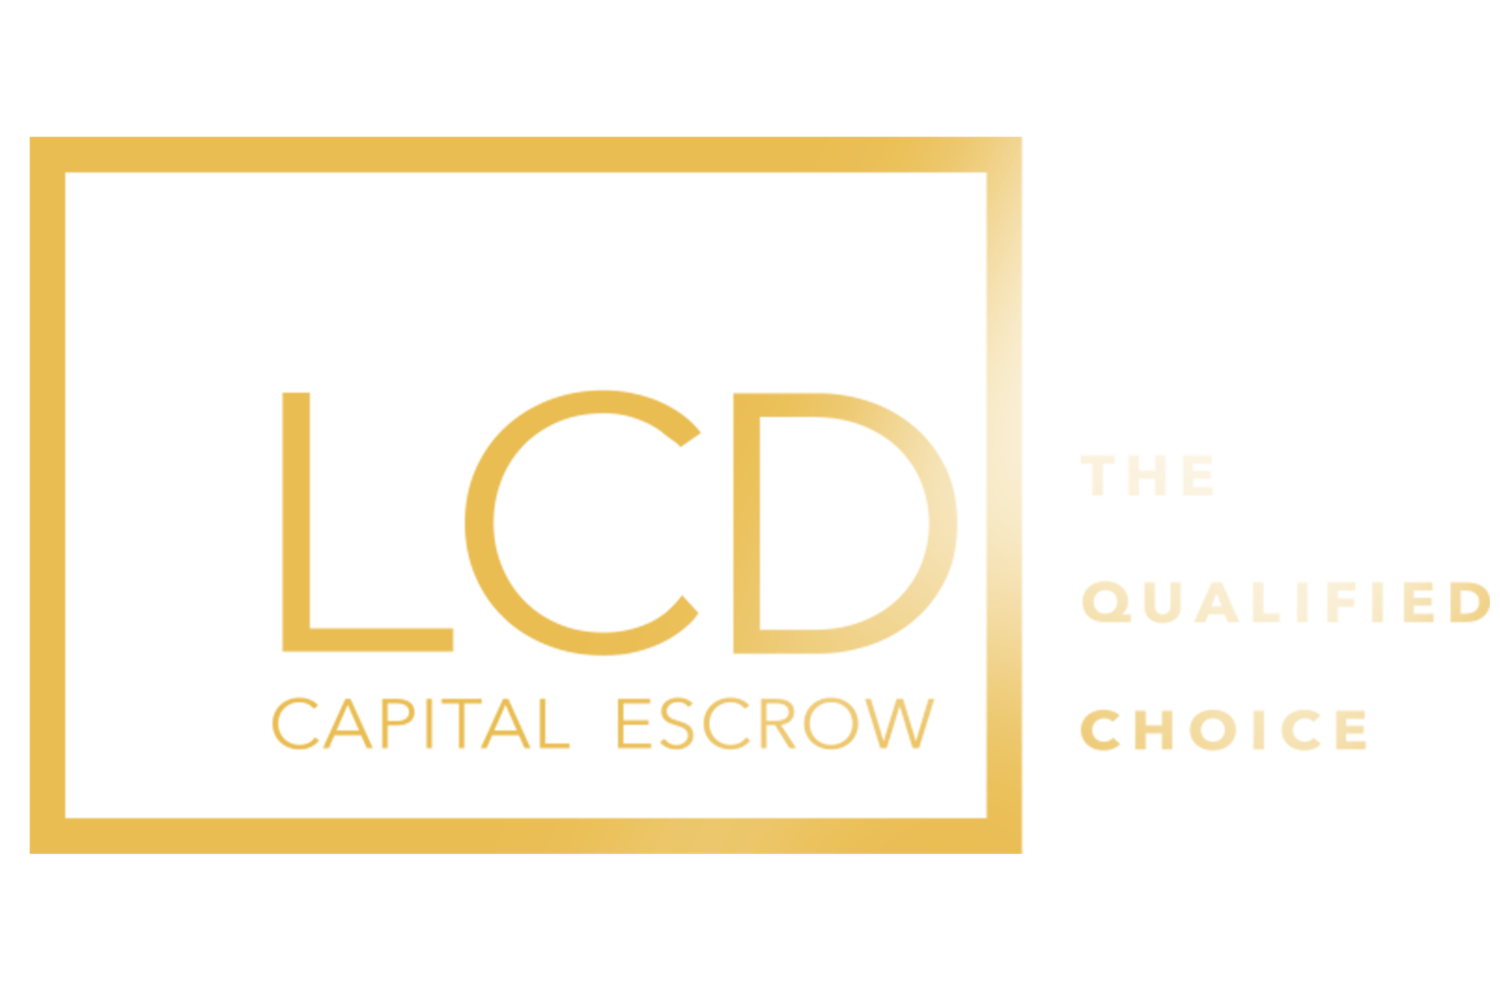 LCD Capital Escrow